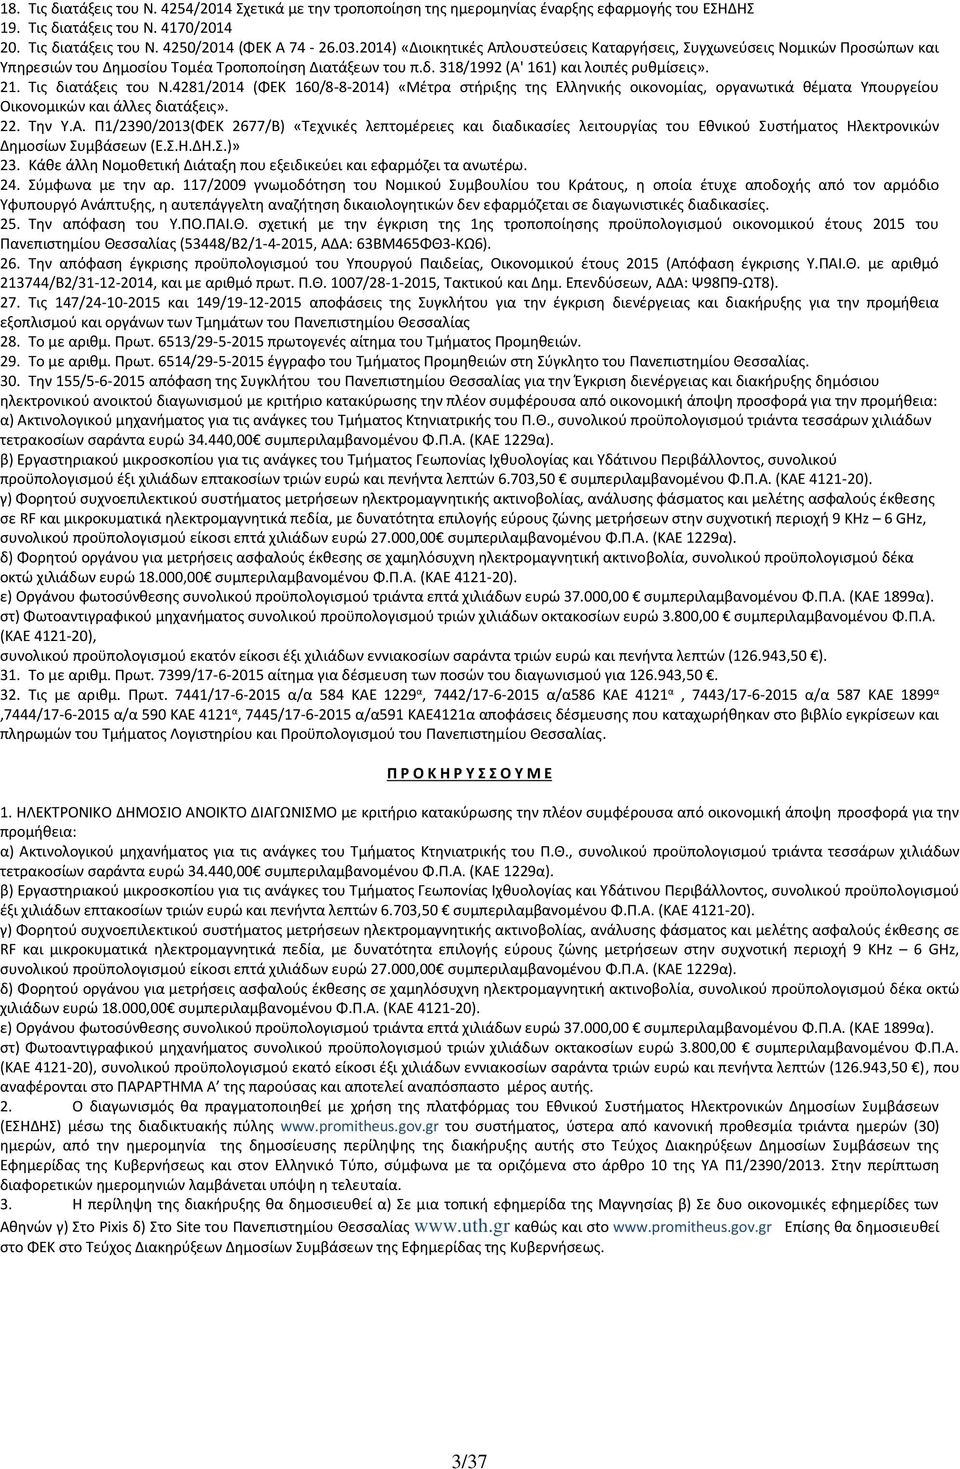 Τις διατάξεις του Ν.4281/2014 (ΦΕΚ 160/8-8-2014) «Μέτρα στήριξης της Ελληνικής οικονομίας, οργανωτικά θέματα Υπουργείου Οικονομικών και άλλες διατάξεις». 22. Την Υ.Α.